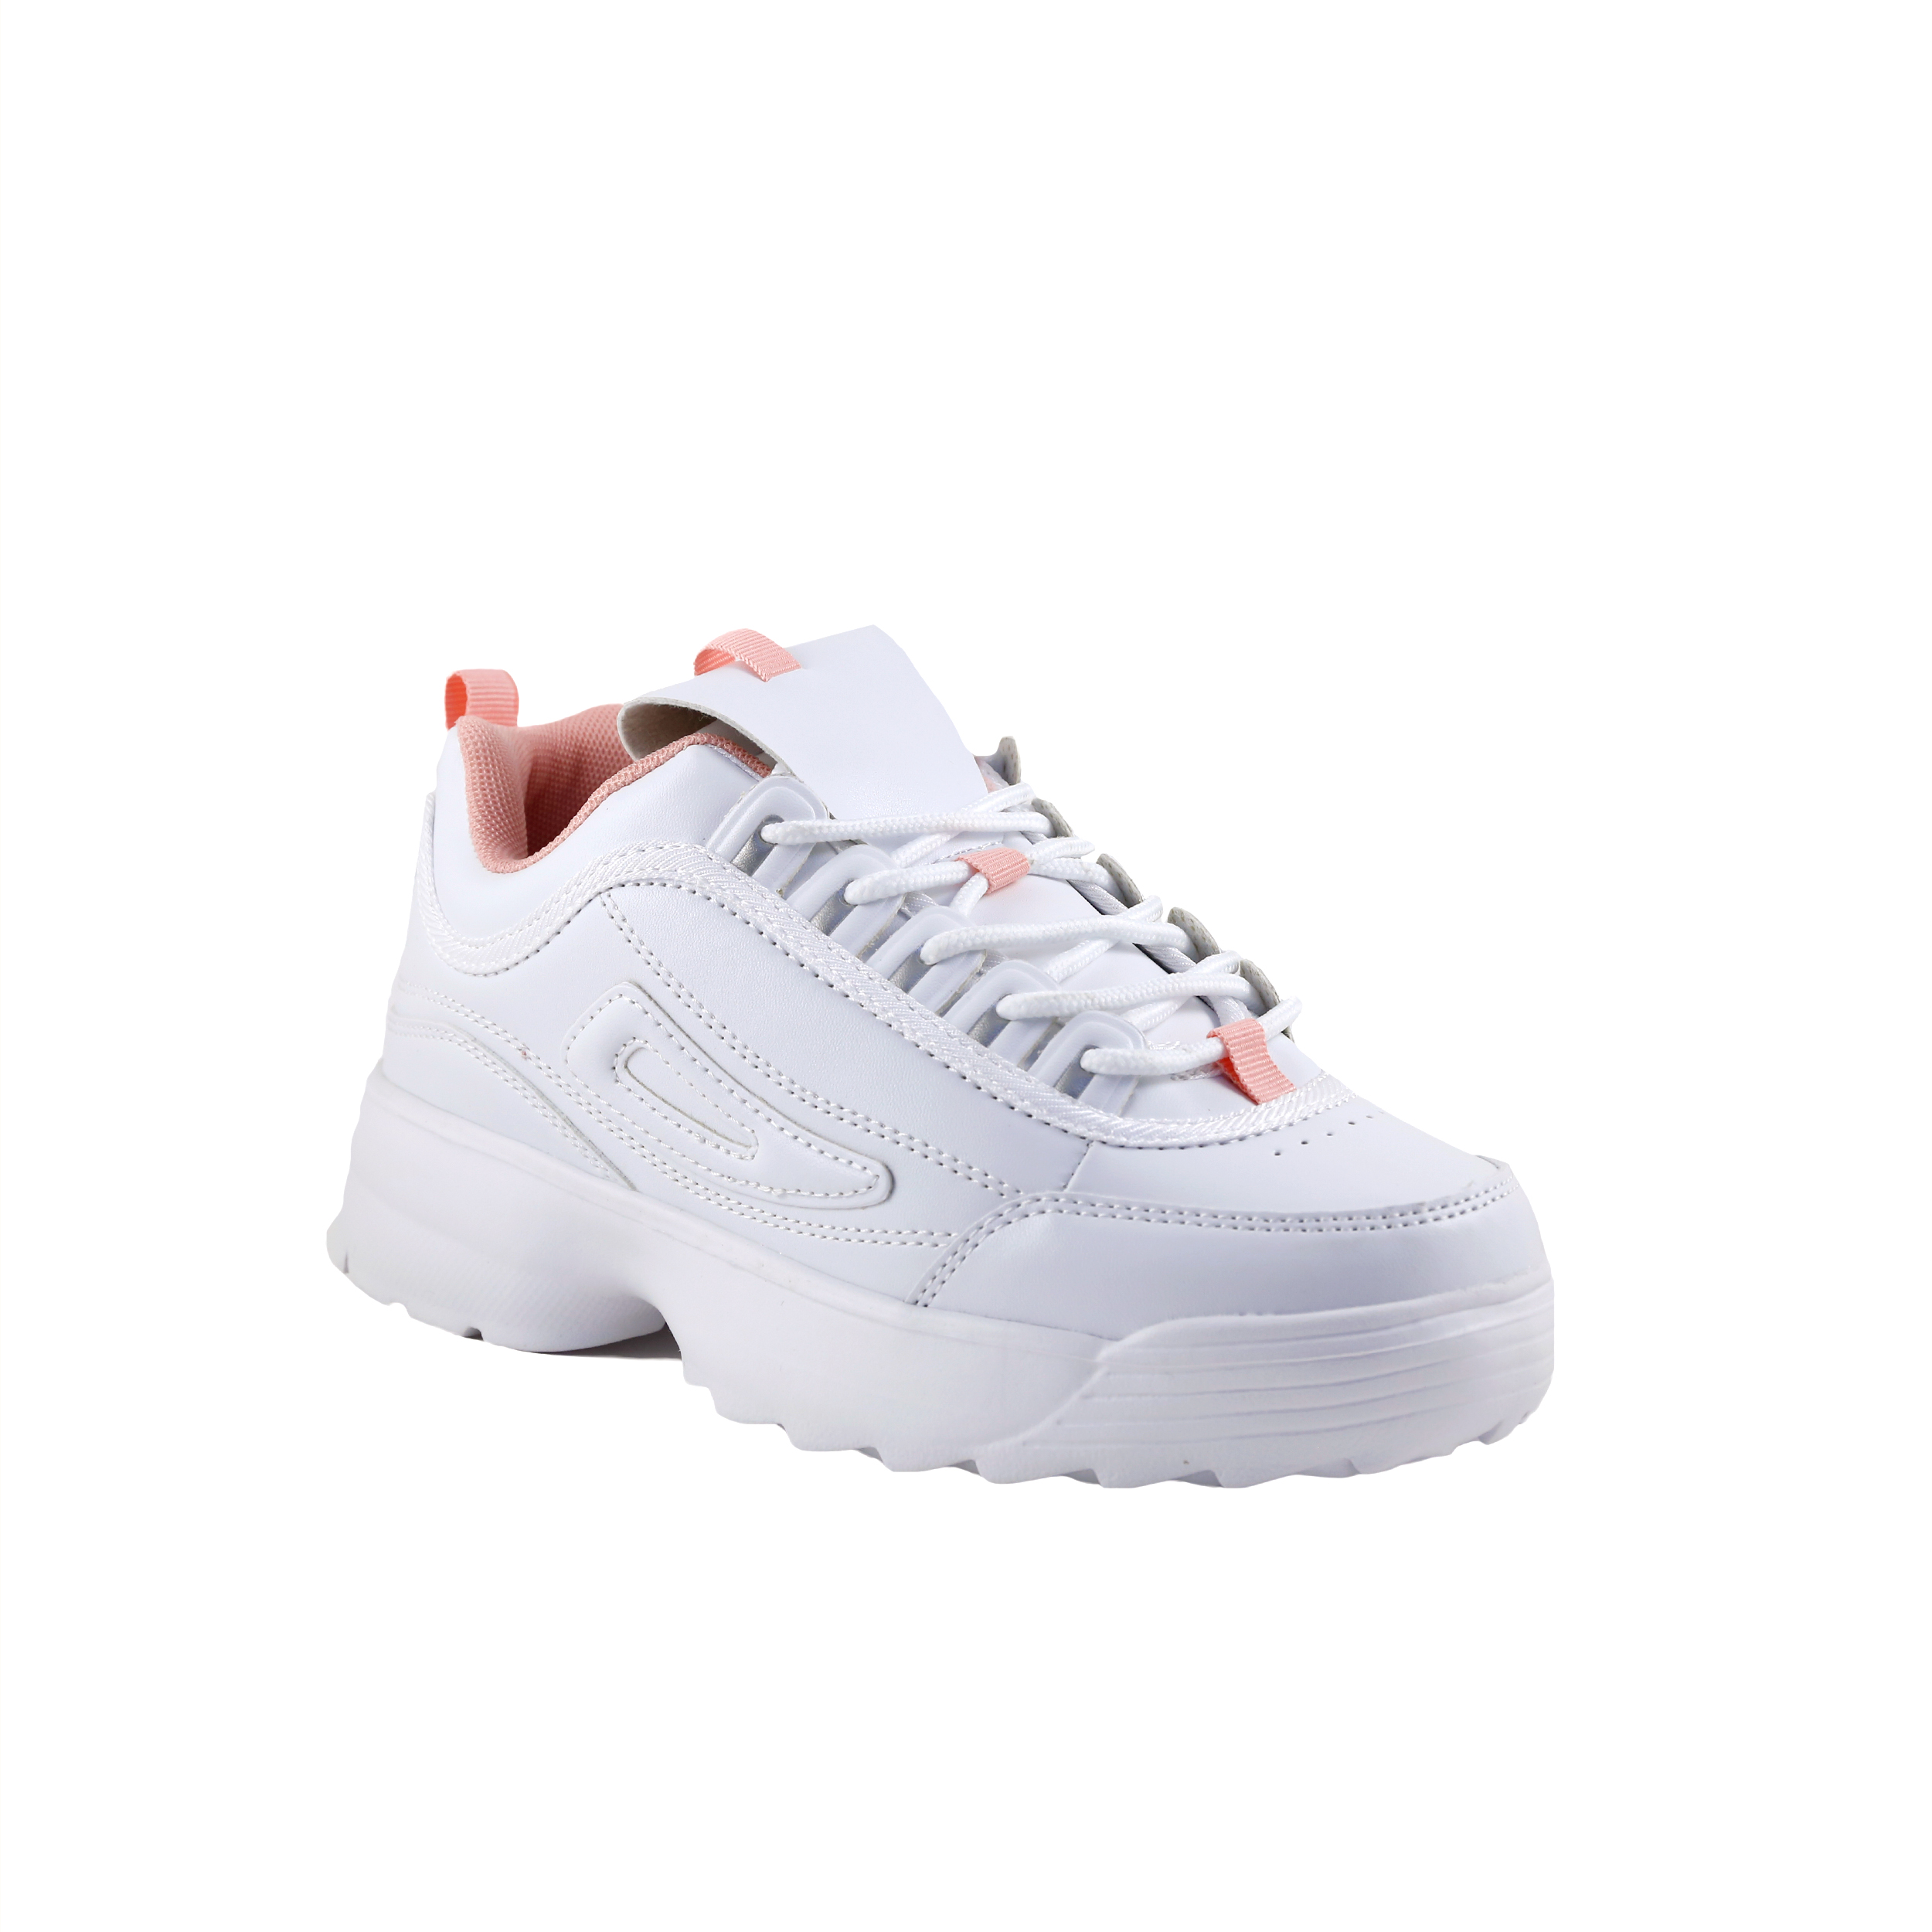 Γυναίκα Παπούτσια Casual-Sneakers Λευκά casual sneakers 